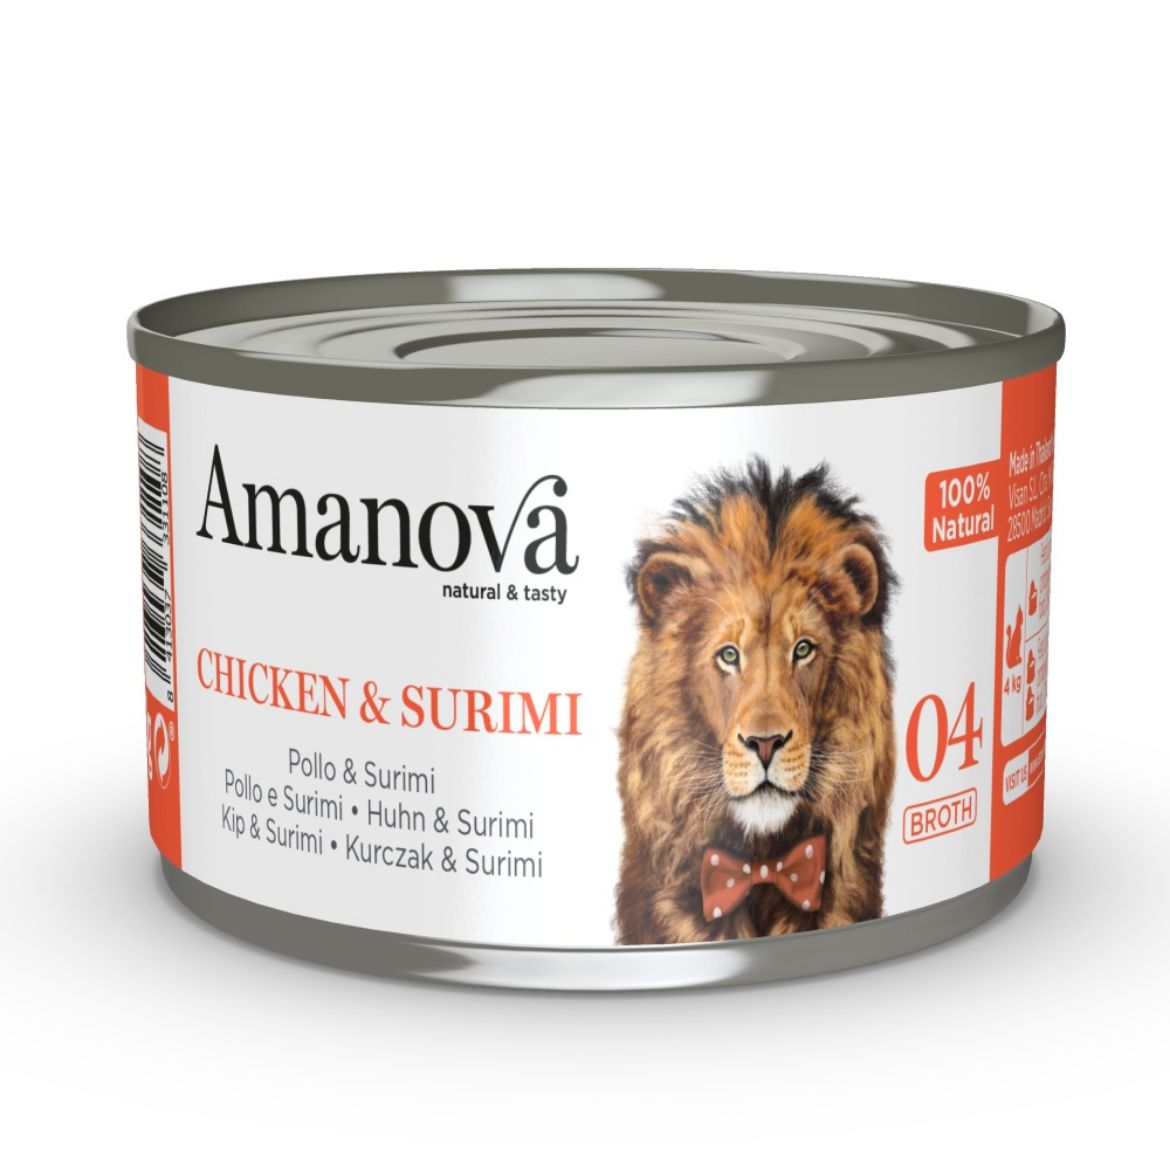 Obrázek z Amanova Cat Chicken & Surimi ve vývaru (04), konzerva 70 g  